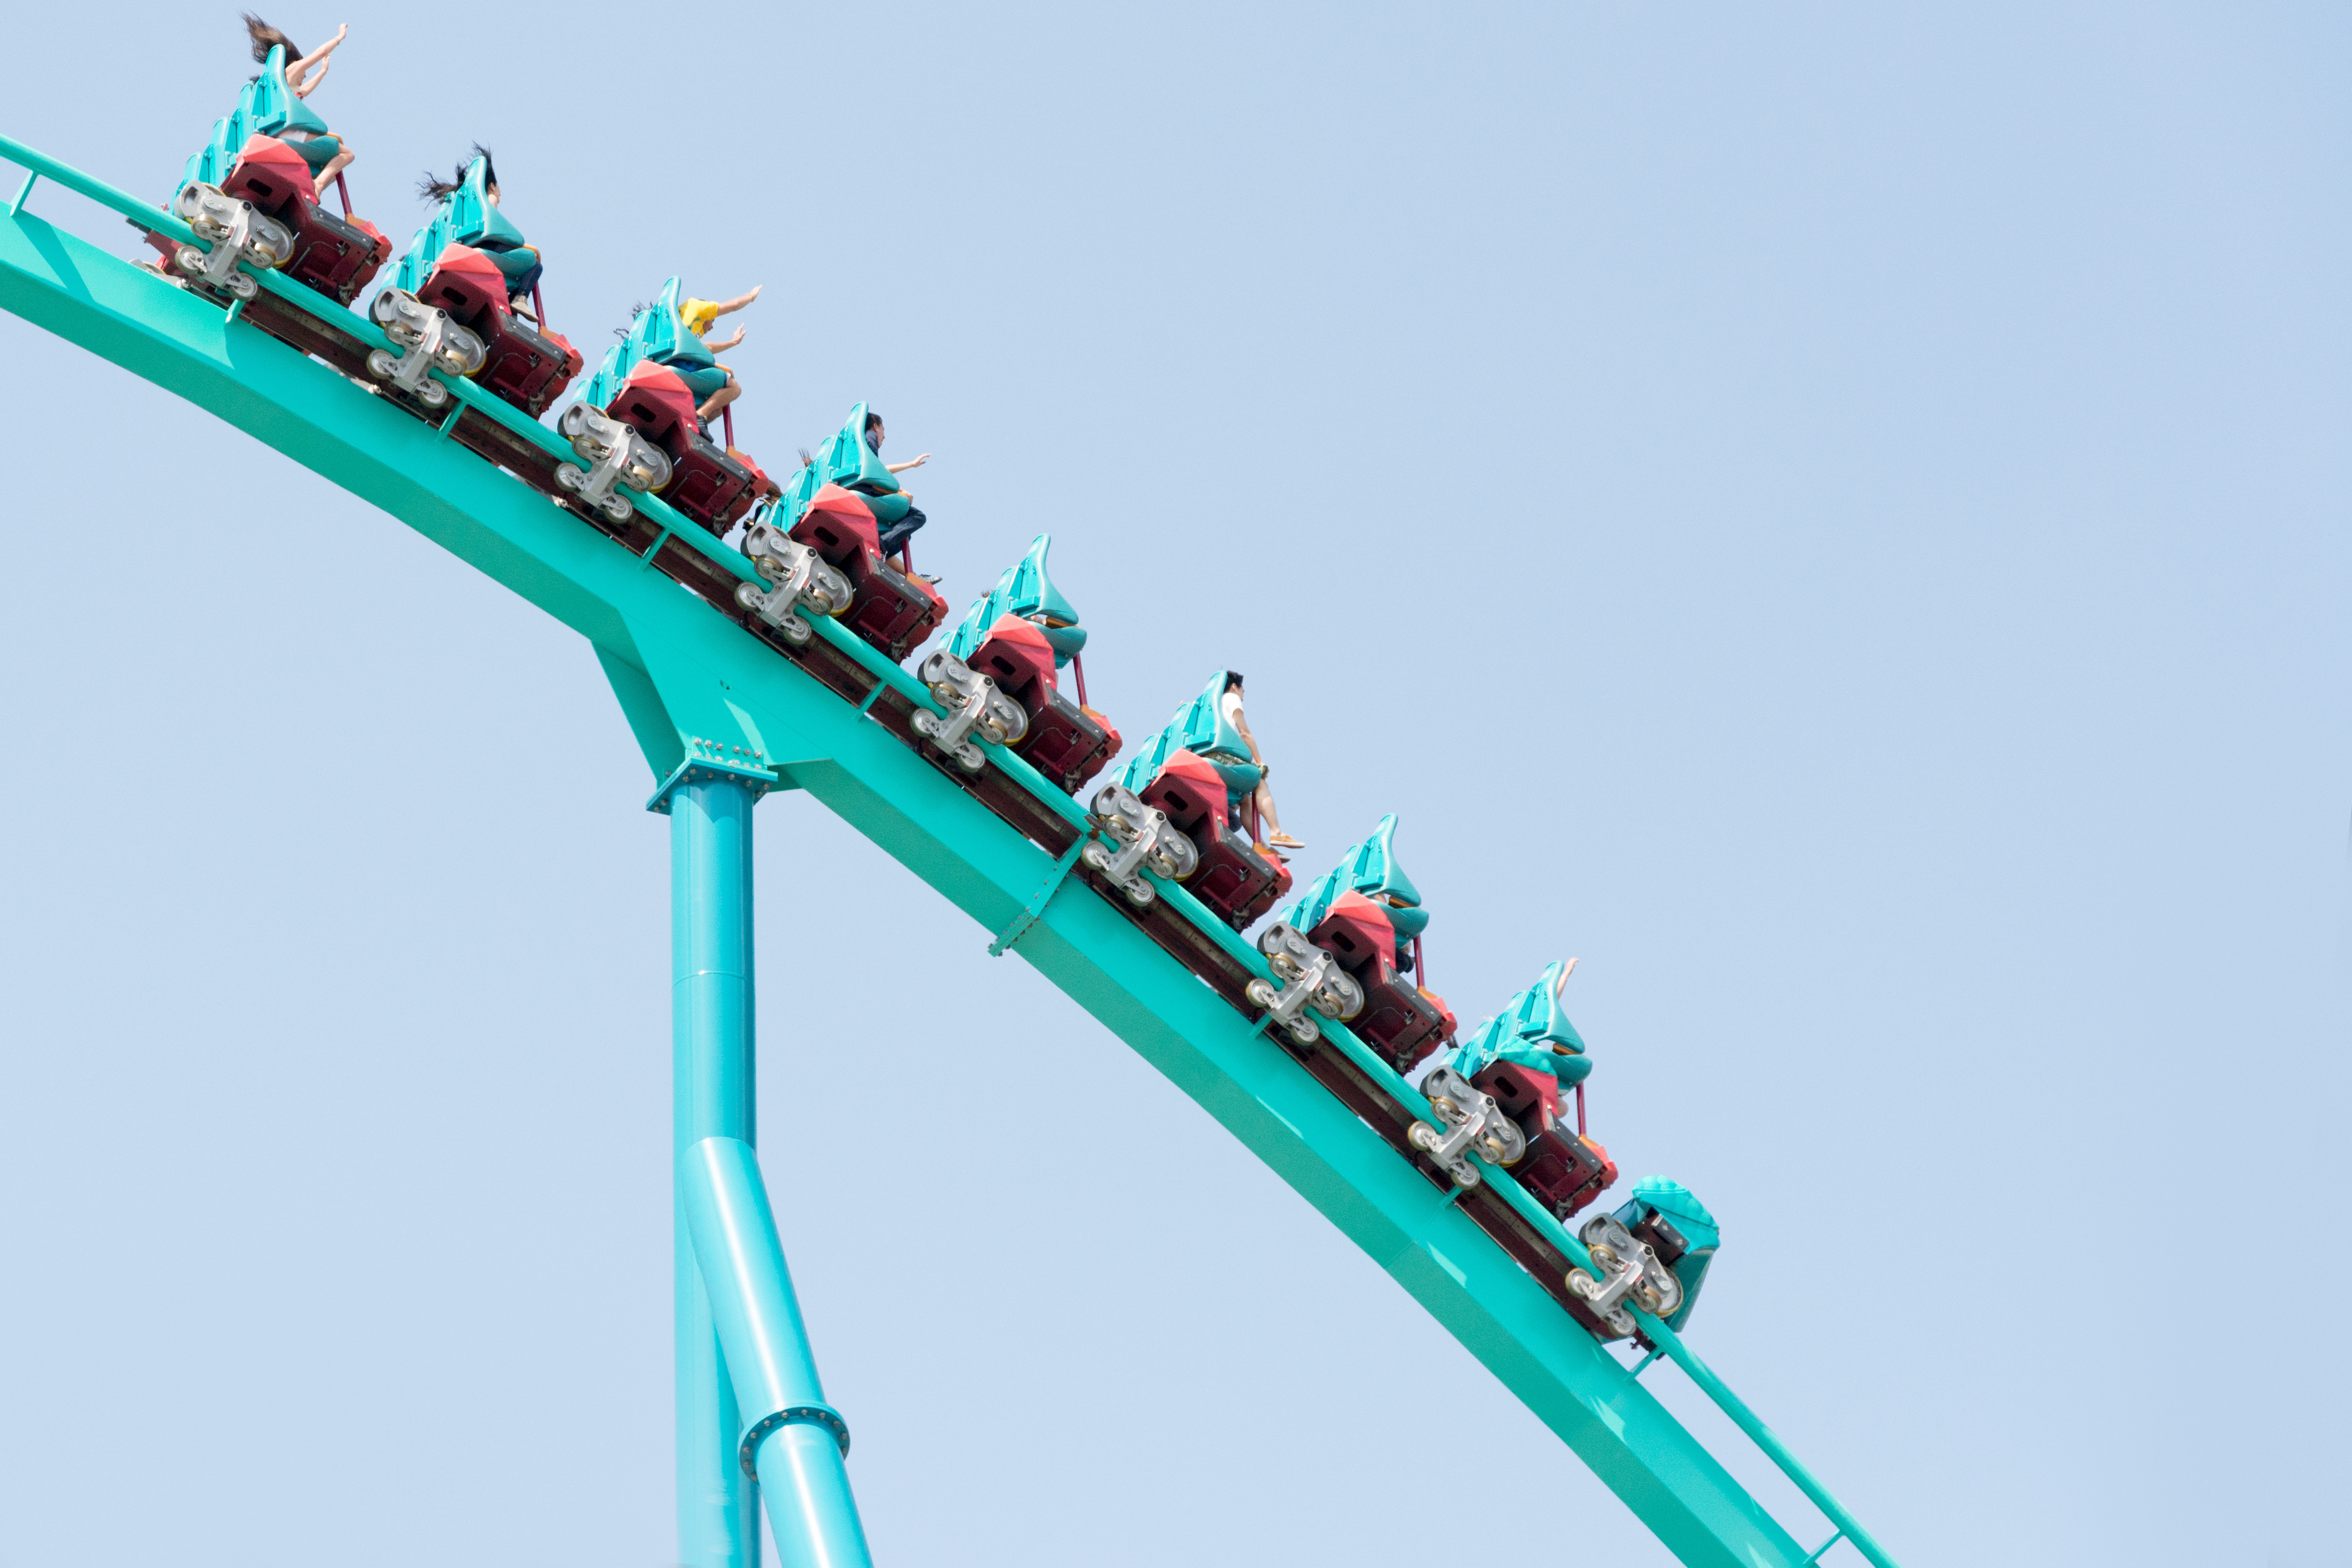 leviathan roller coaster logo